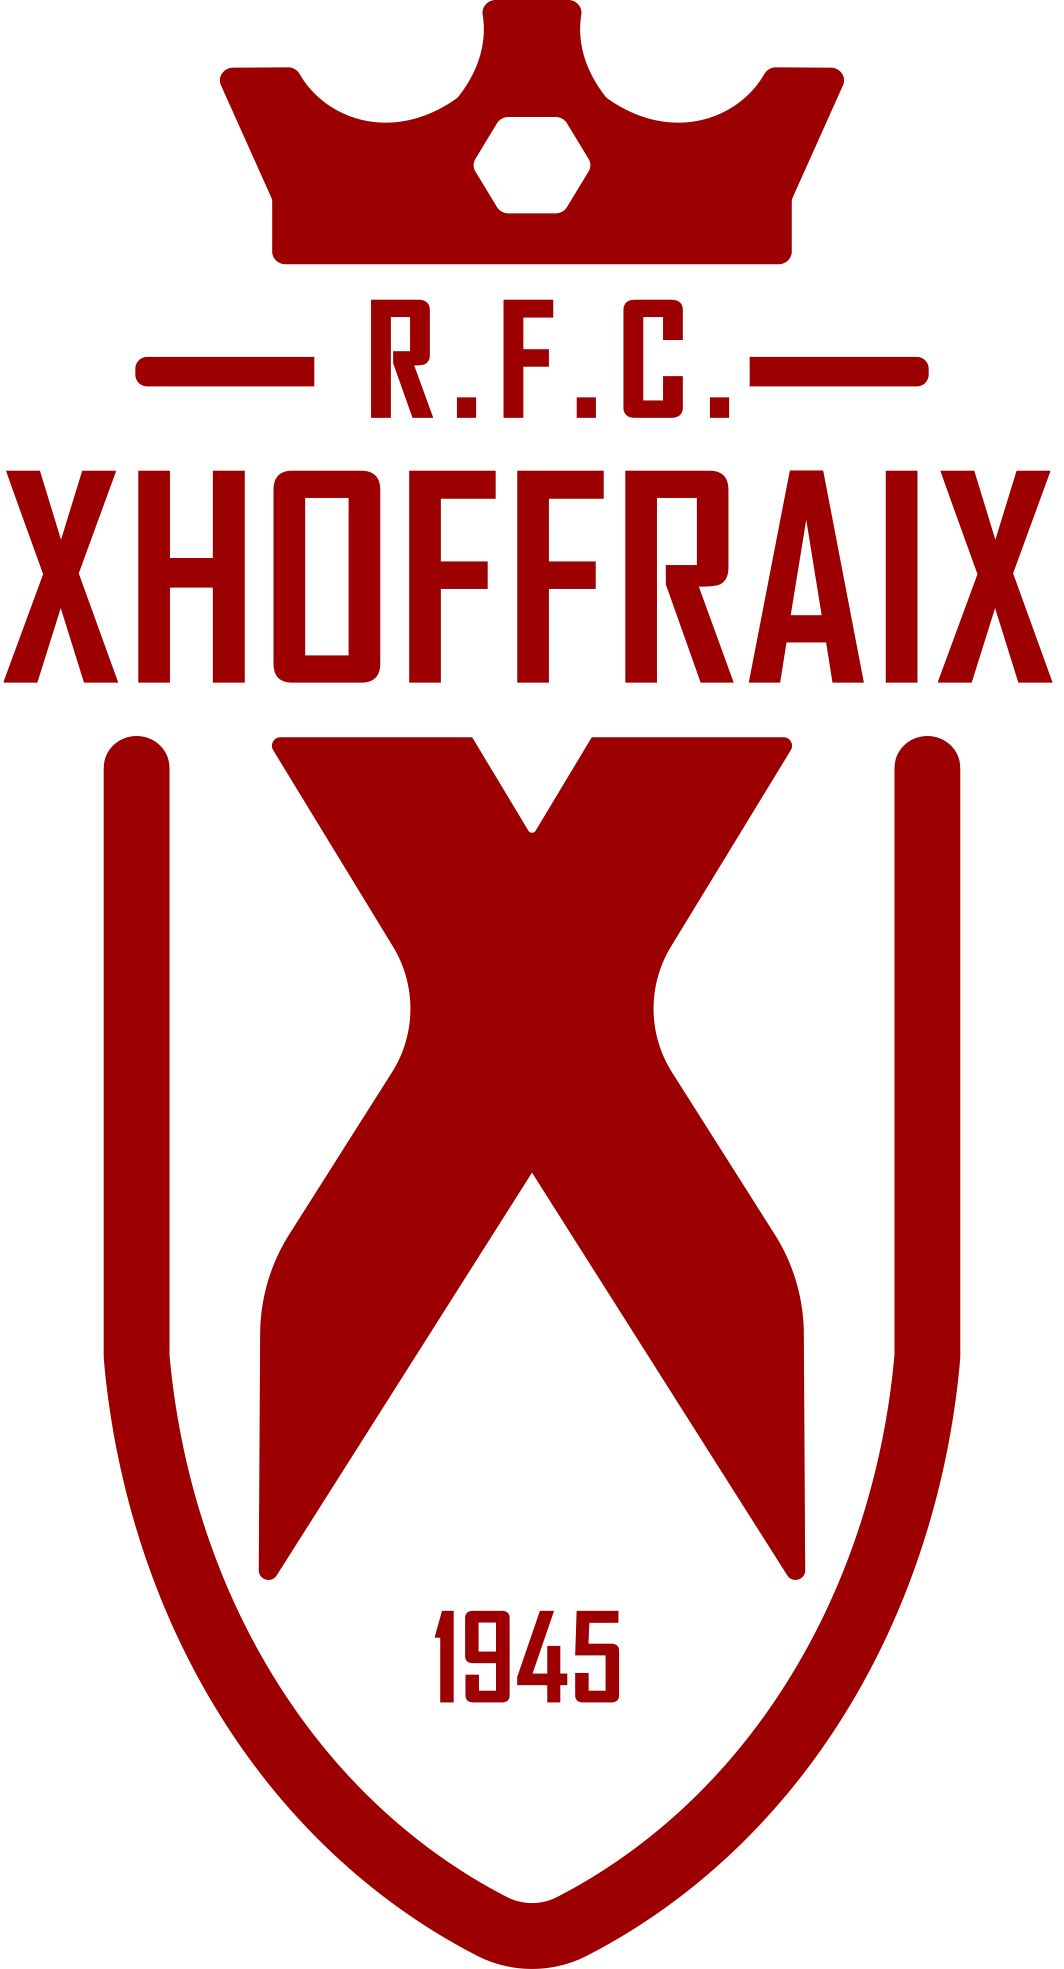 1 - R.F.C. Xhoffraix